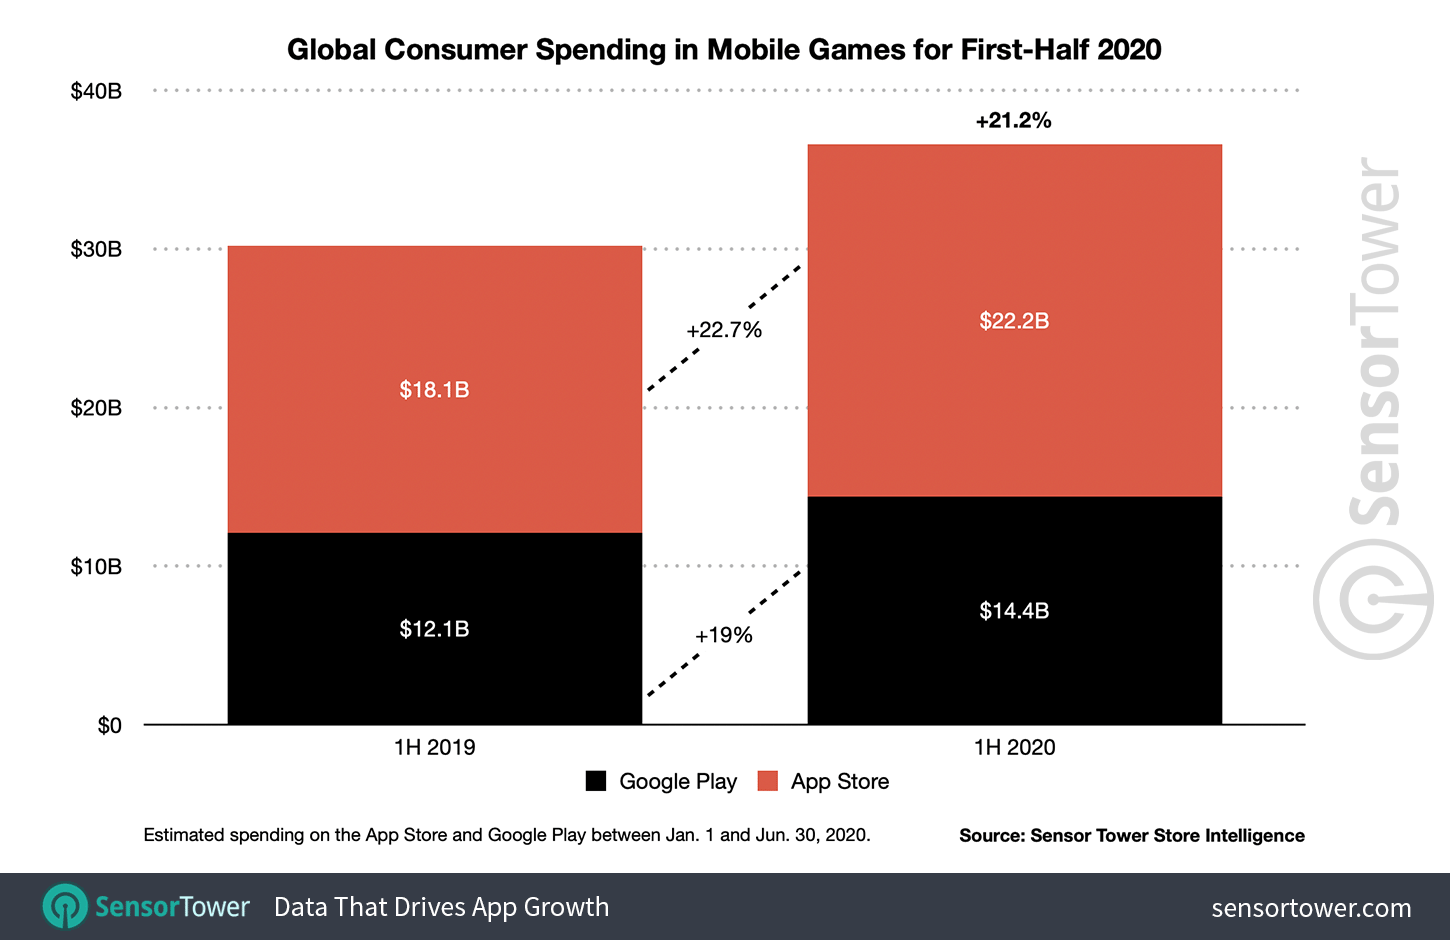 1H 2020 Mobile Game Revenue